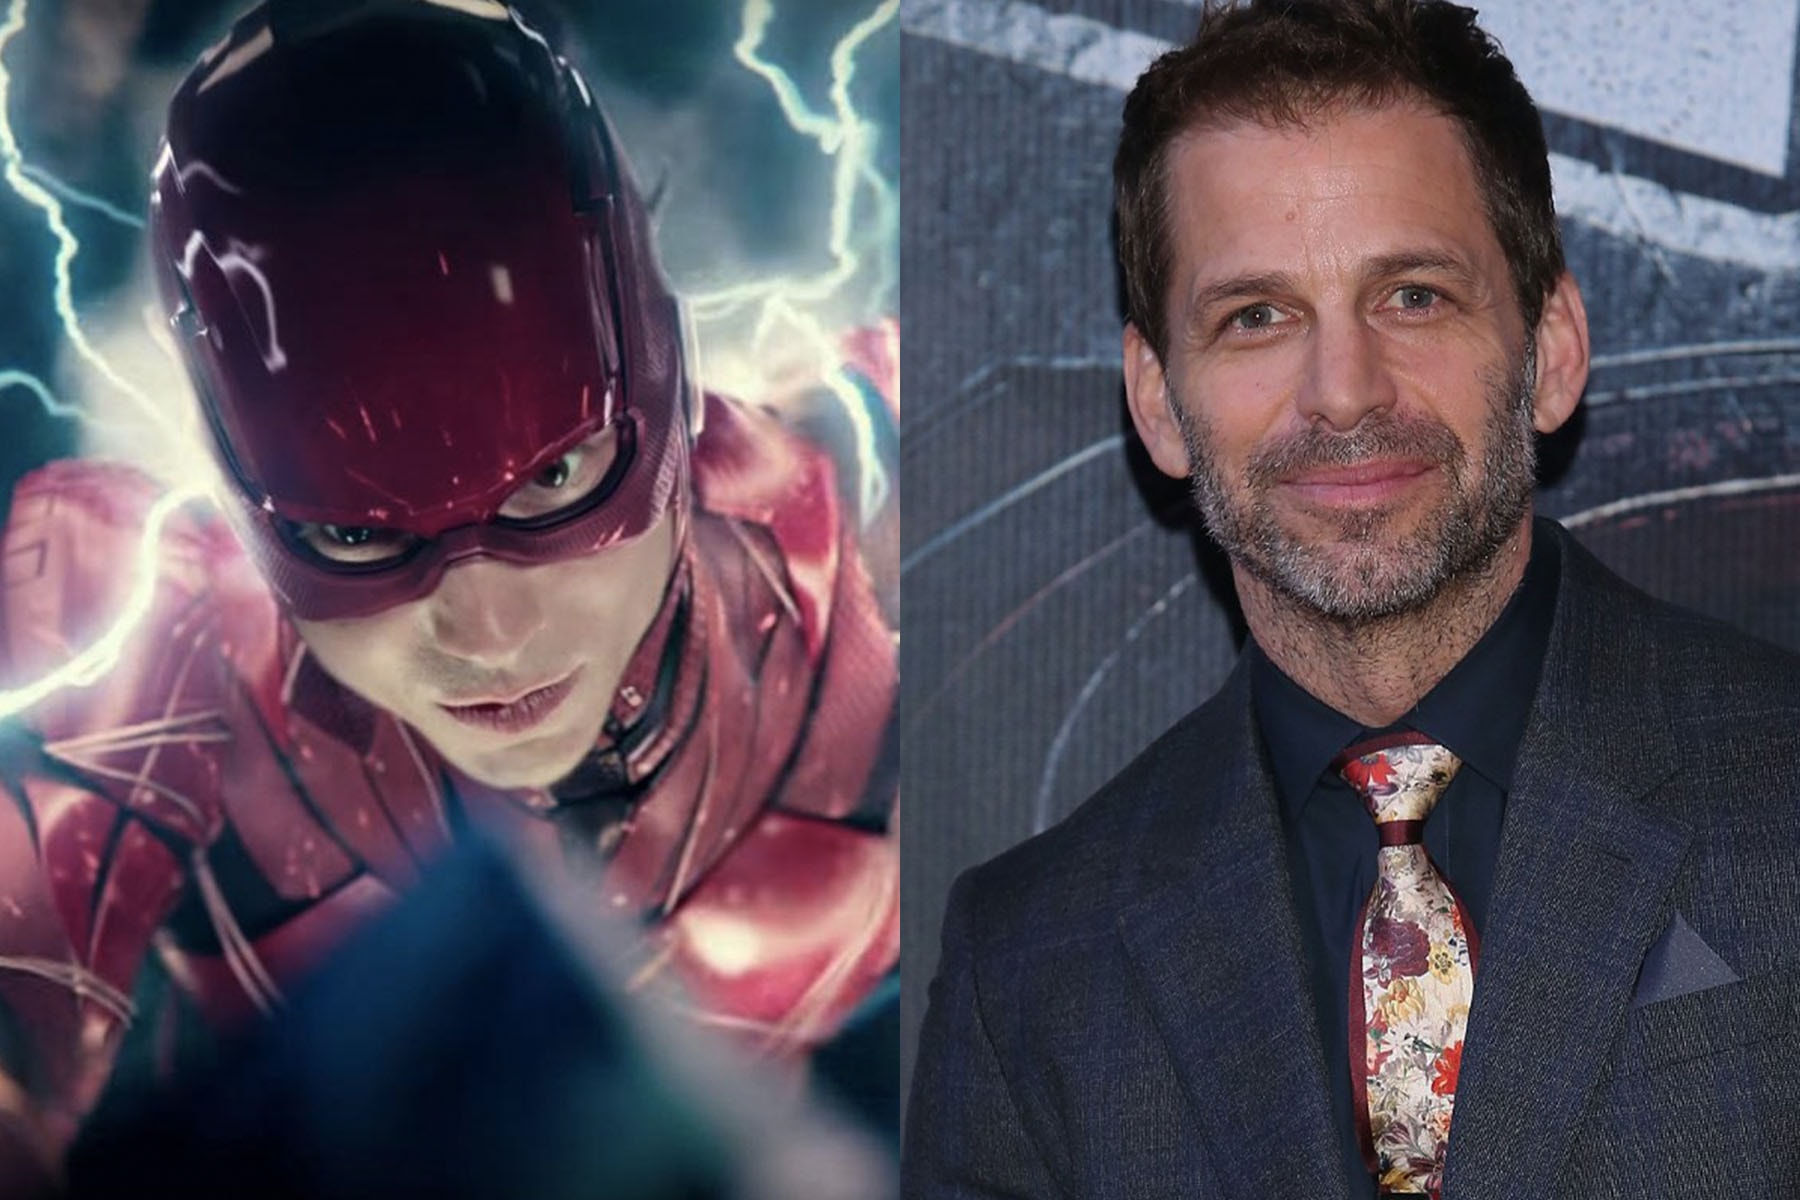 傳言稱《閃電俠 The Flash》將抹去 Zack Snyder 所打造「DC 擴展宇宙」